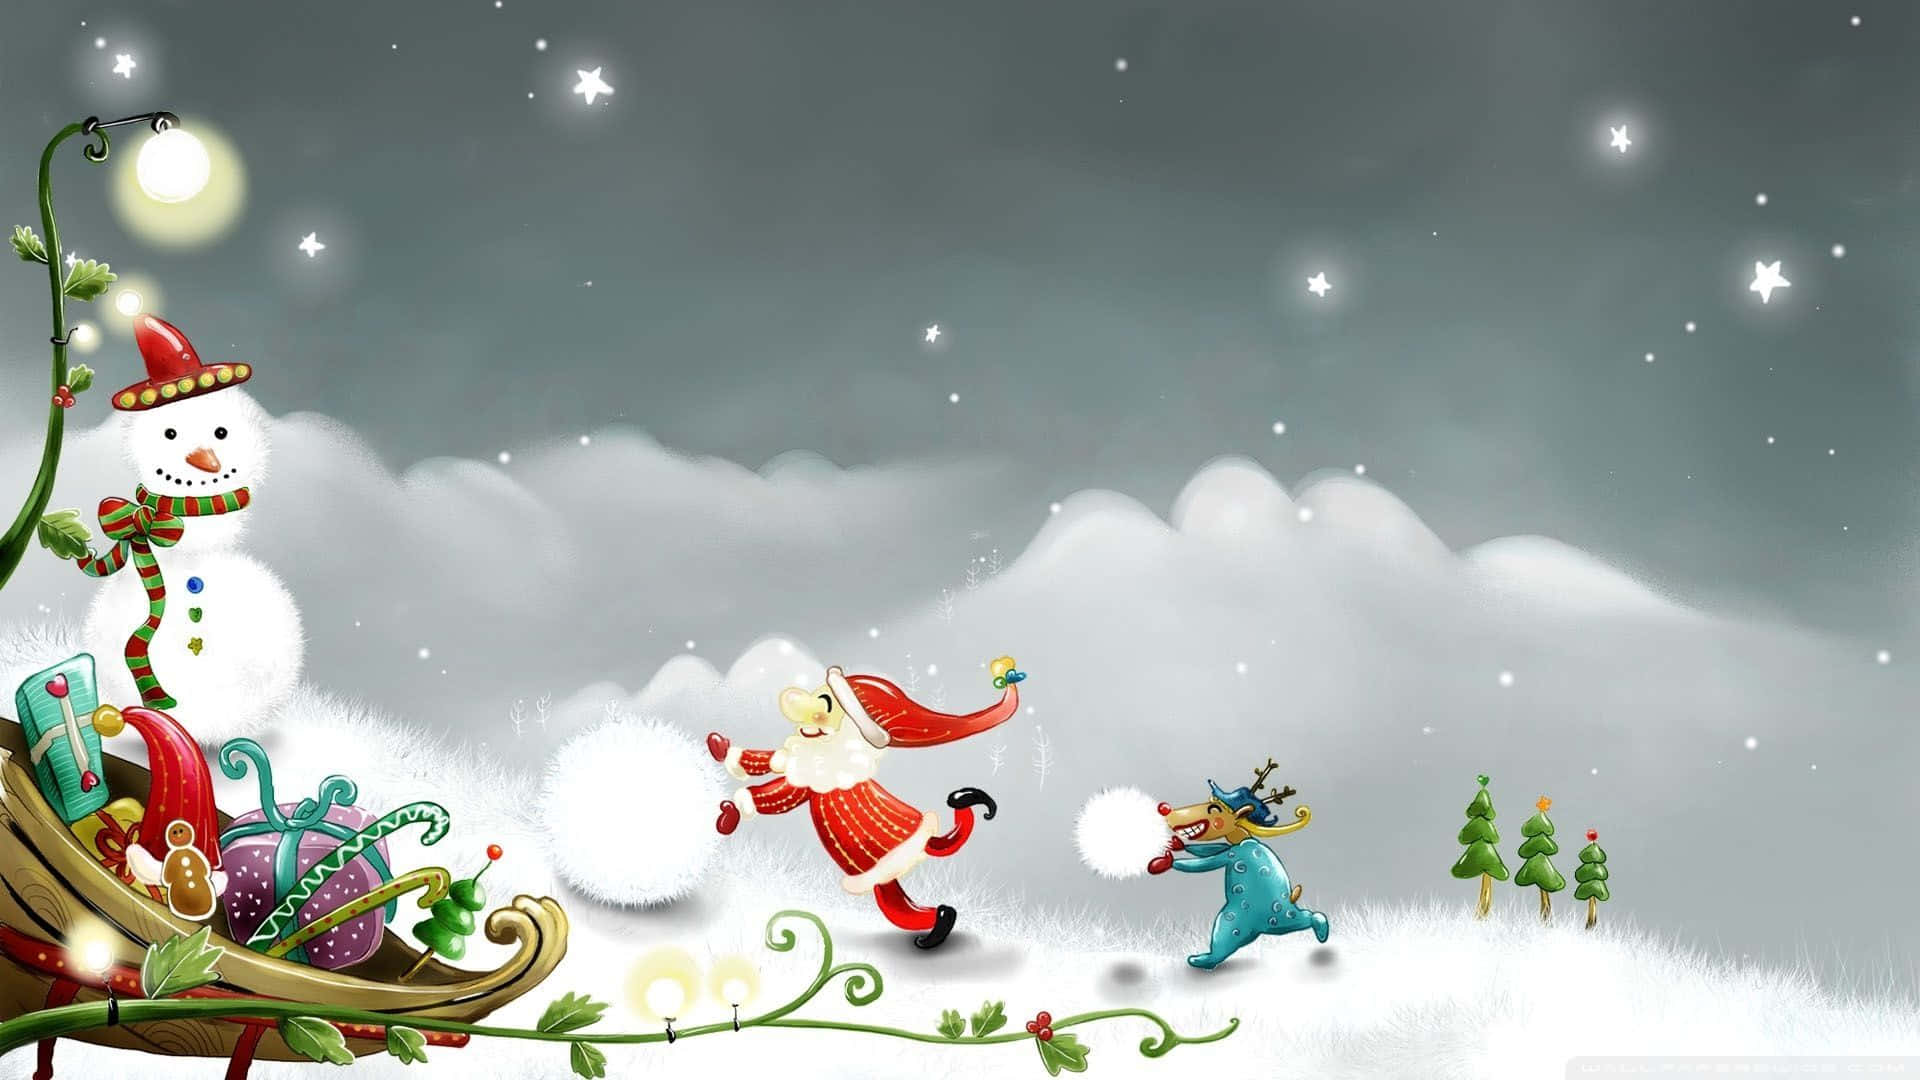 Cartoonde Natal Do Papai Noel E Boneco De Neve. Papel de Parede